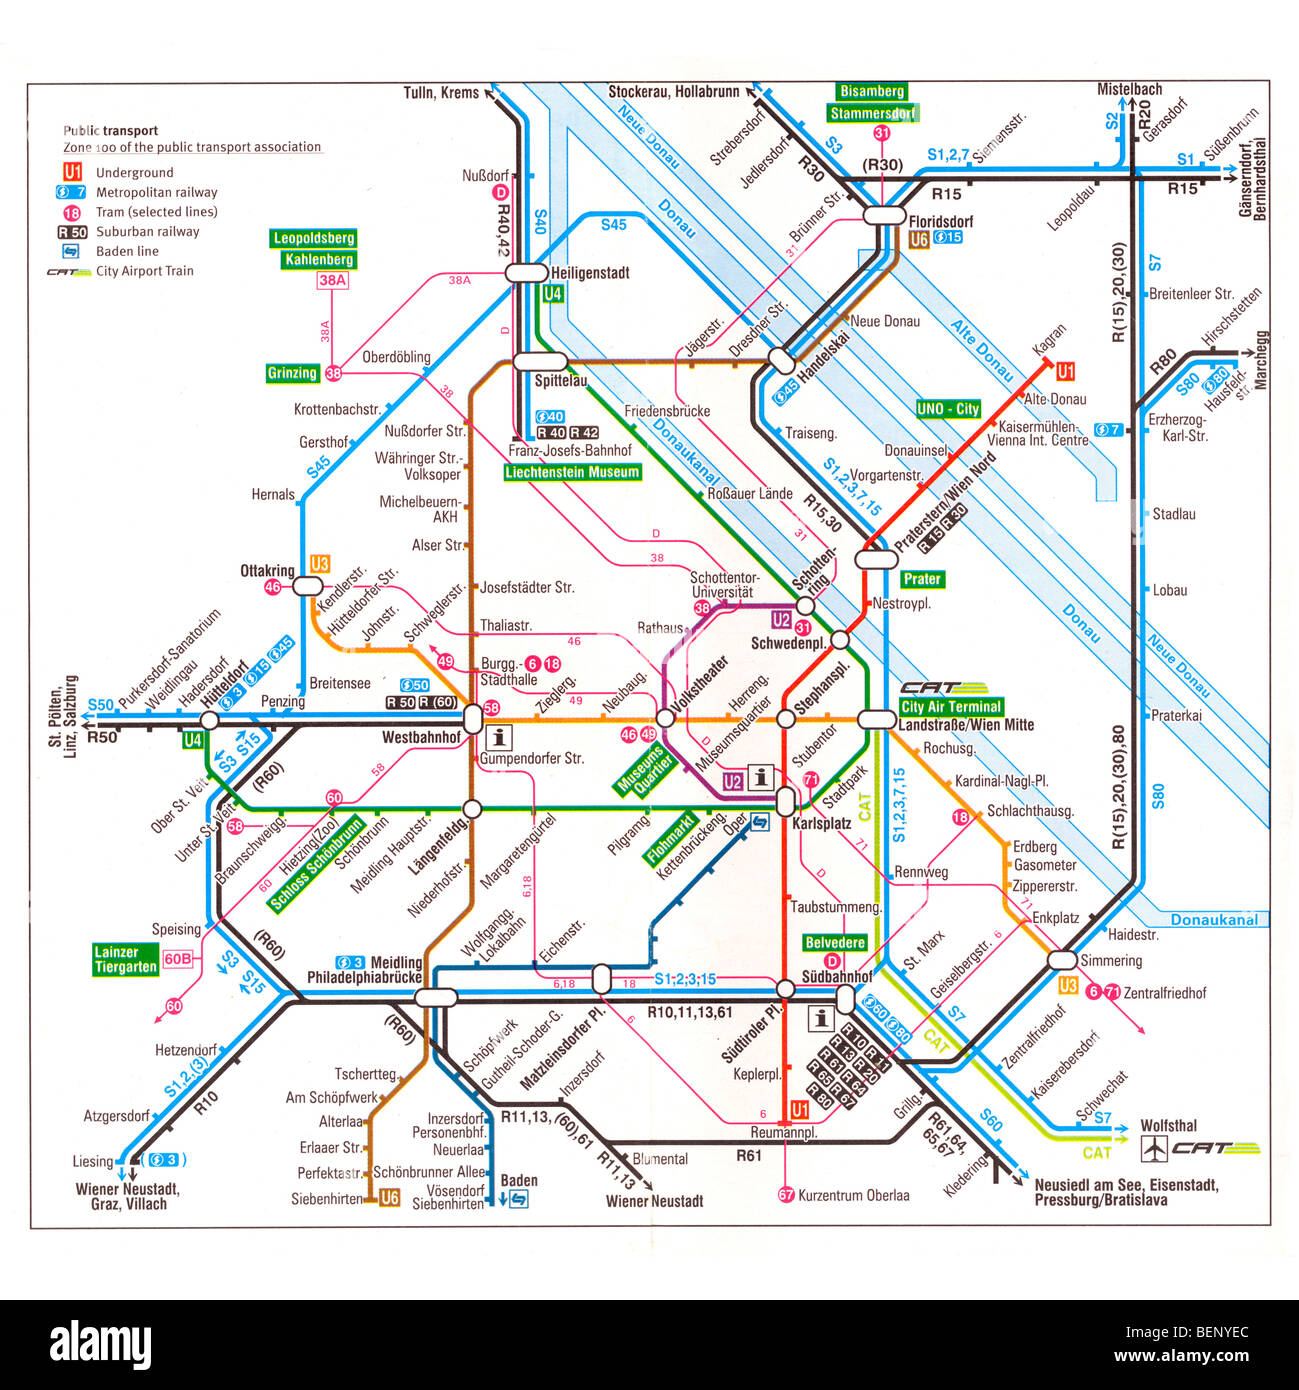 Vienna Metro Karte - die österreichische Hauptstadt u-Bahn-Netz  Stockfotografie - Alamy